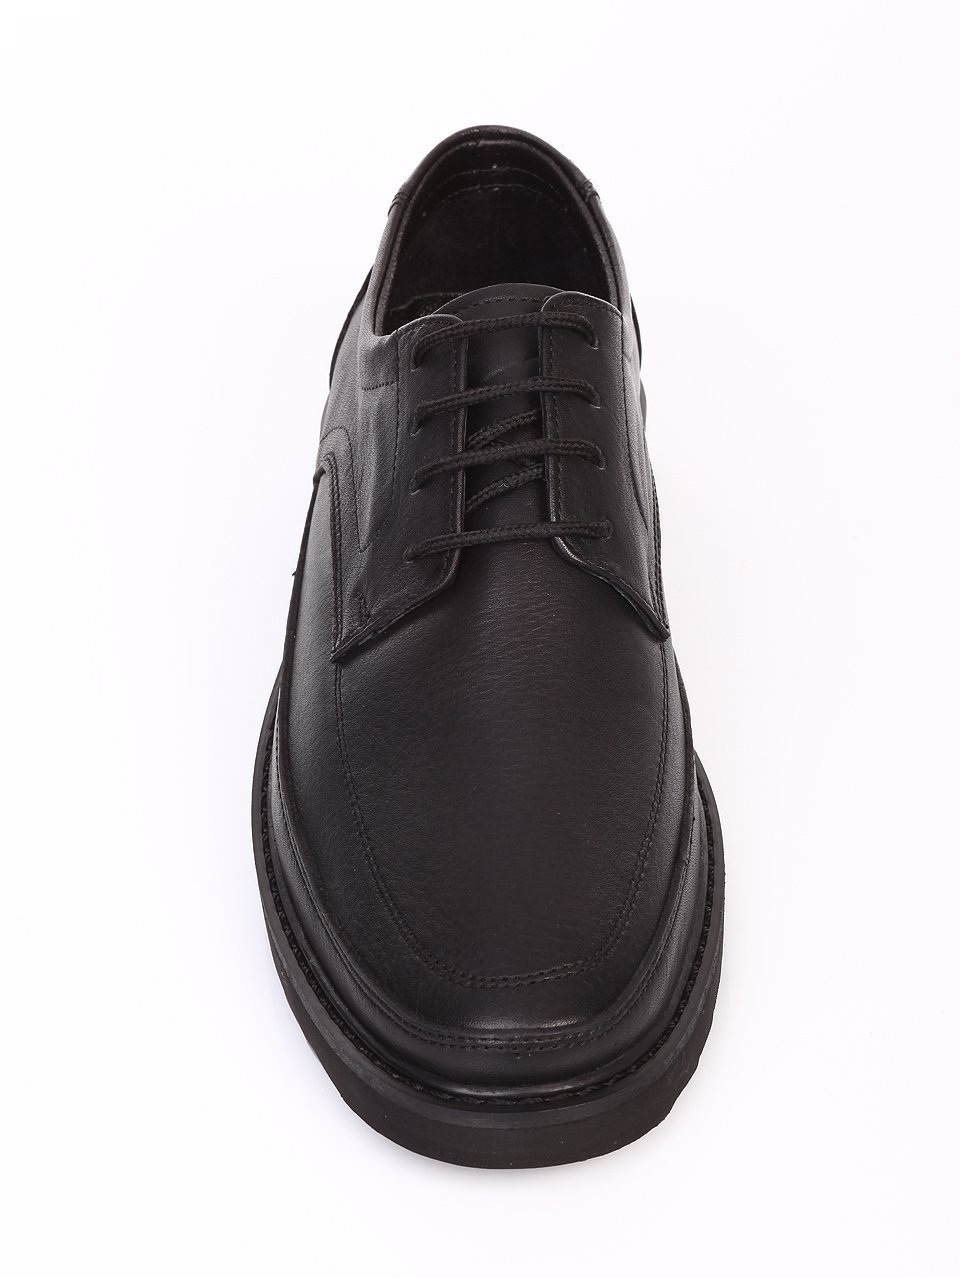 Спортно-елегантни мъжки обувки от естествена кожа  7AT-16885 black